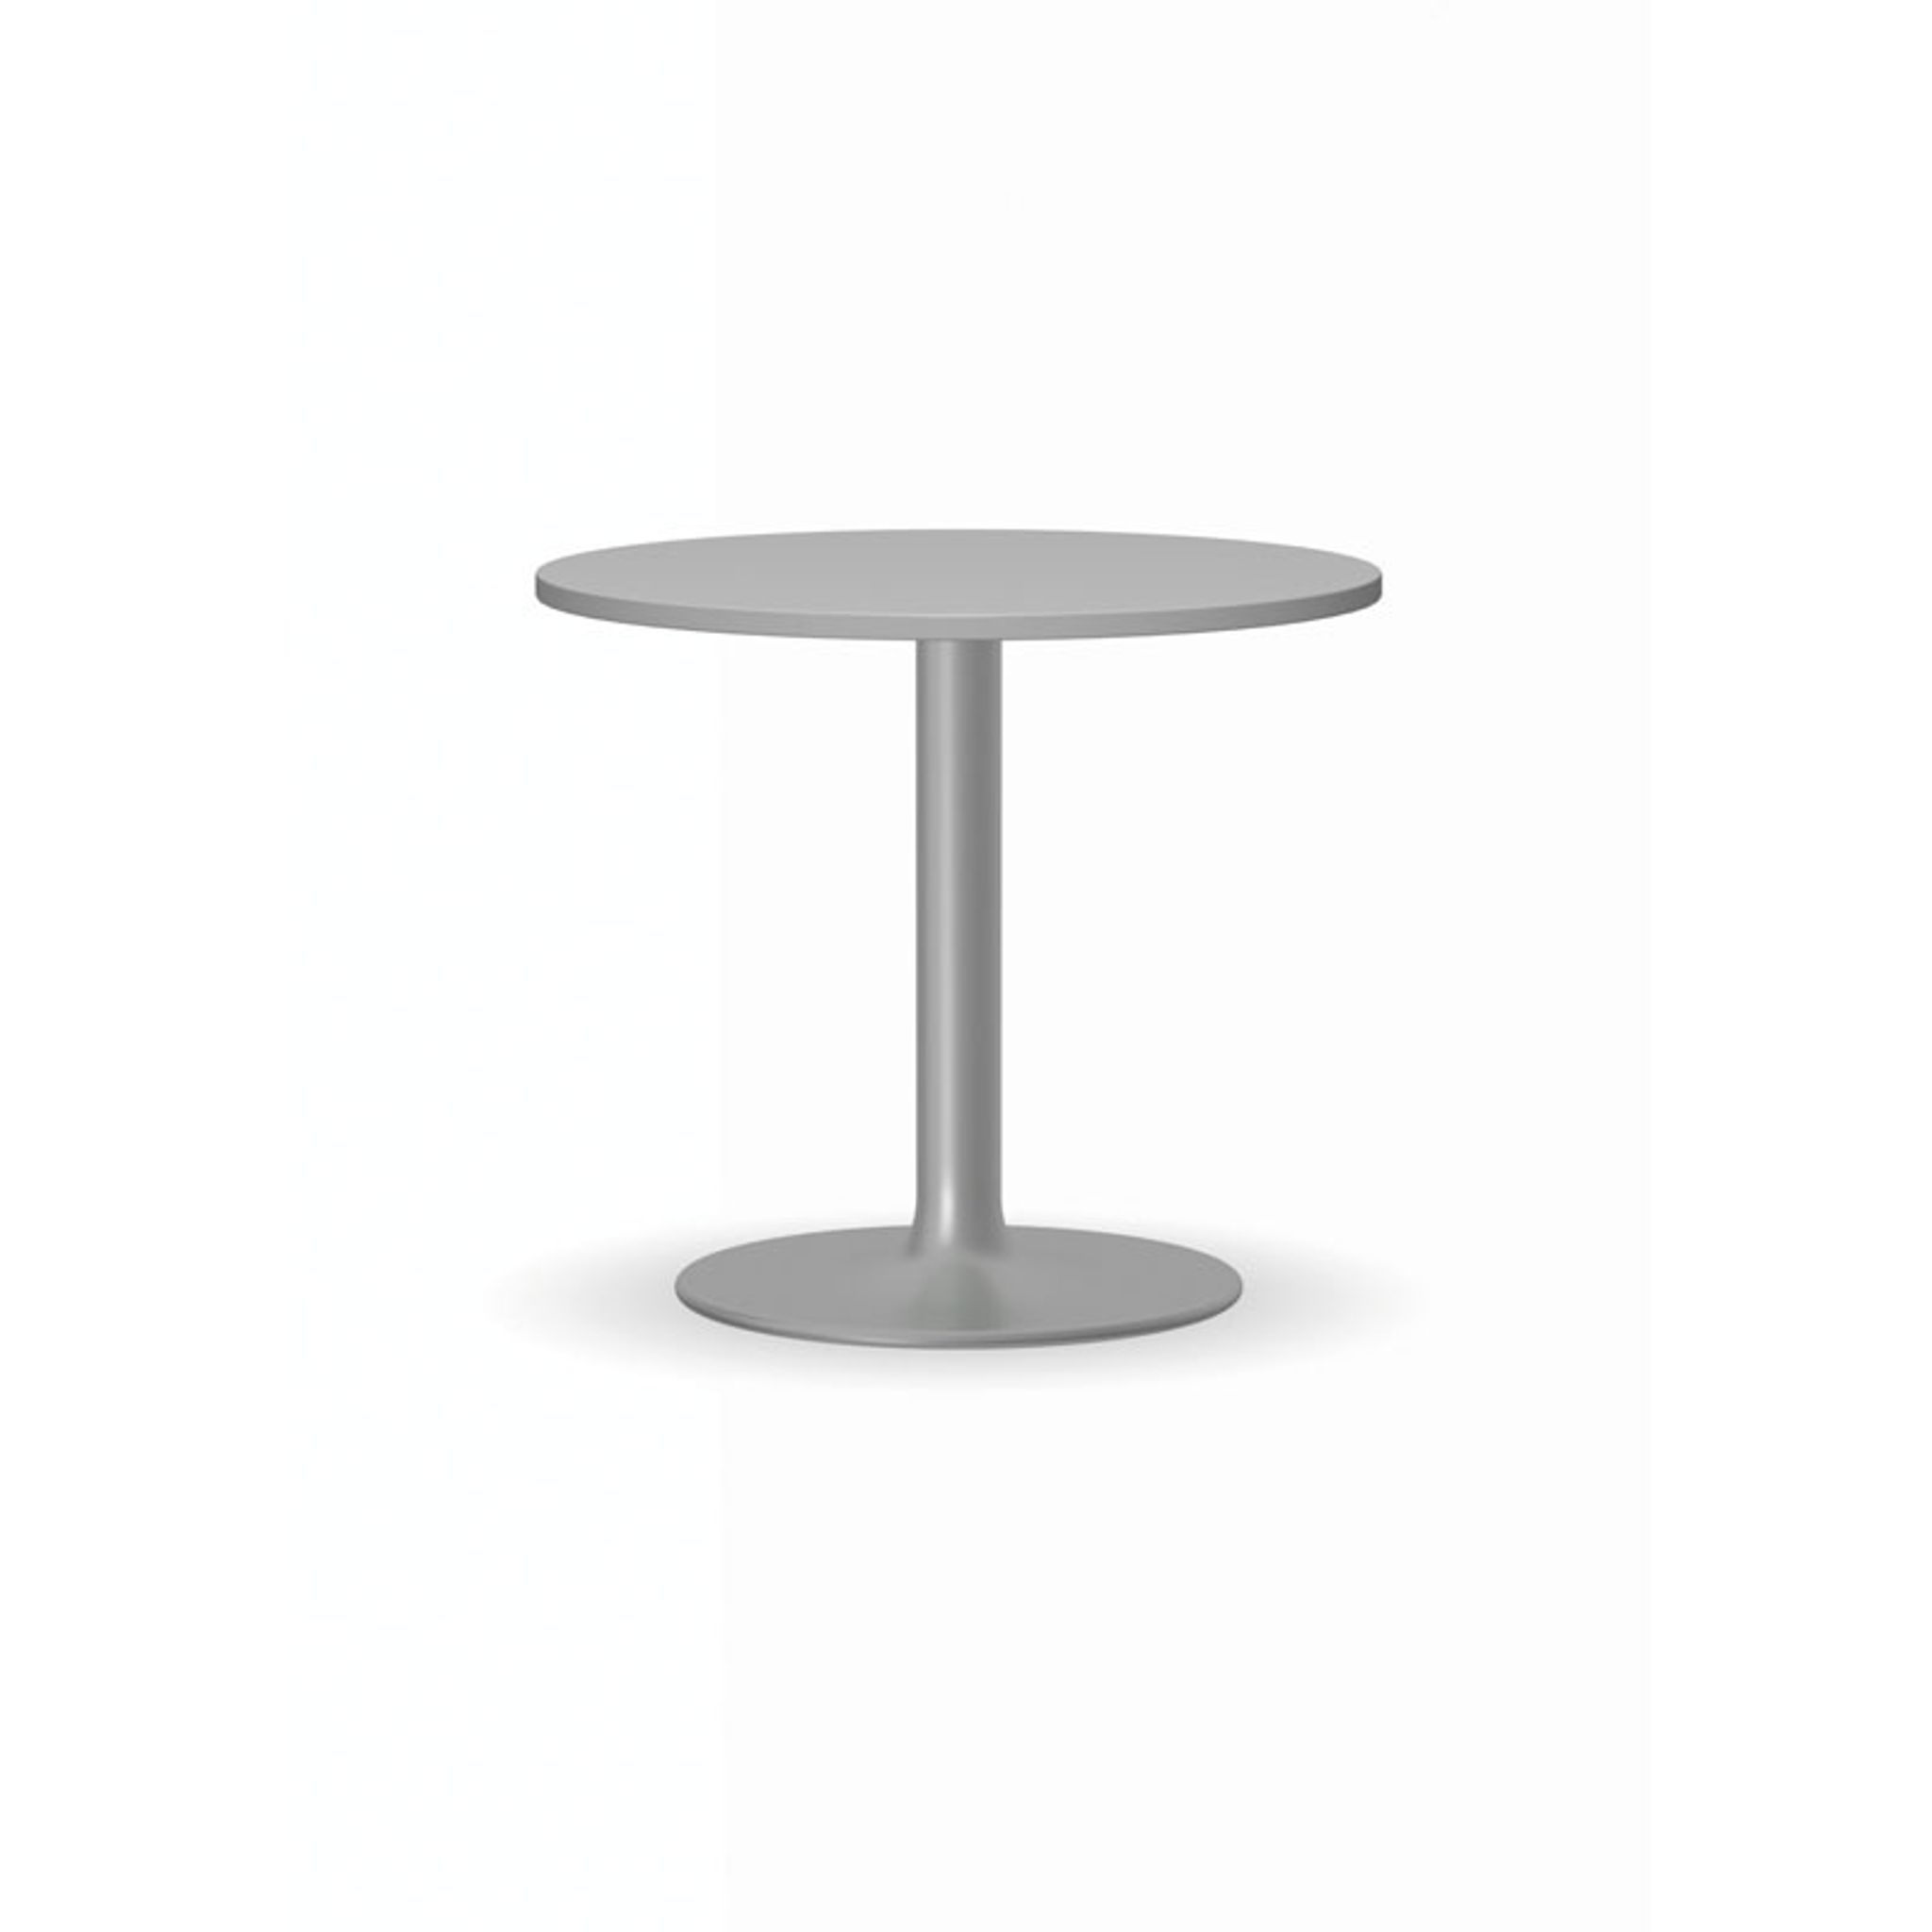 Konferenční stolek ZEUS II, průměr 600 mm, šedá podnož, deska šedá